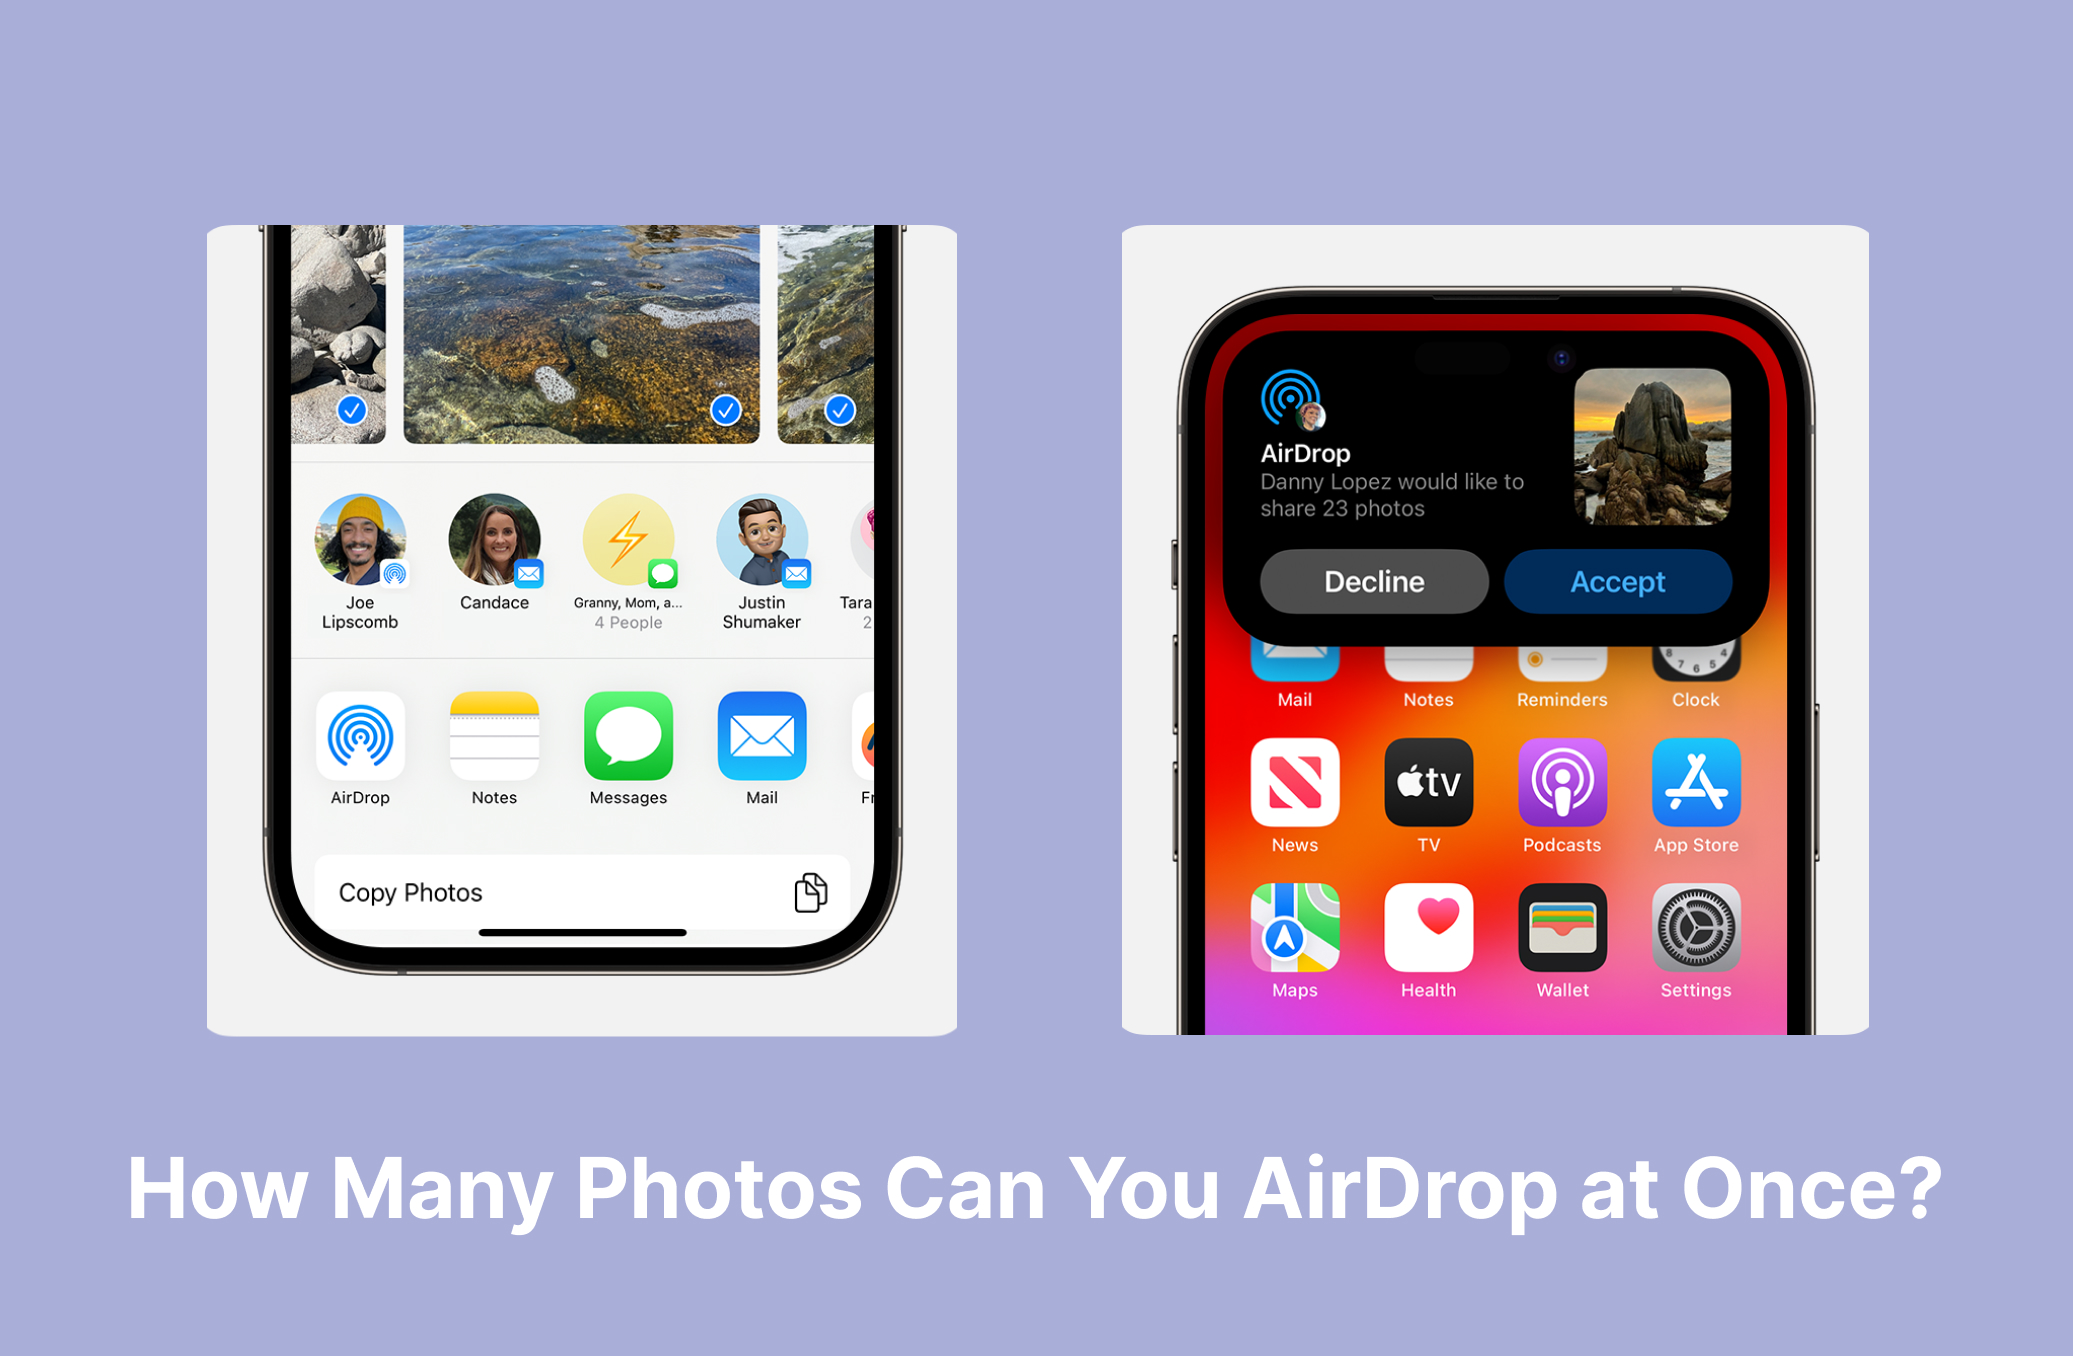 Сколько фотографий Вы можете отправить по AirDrop одновременно?